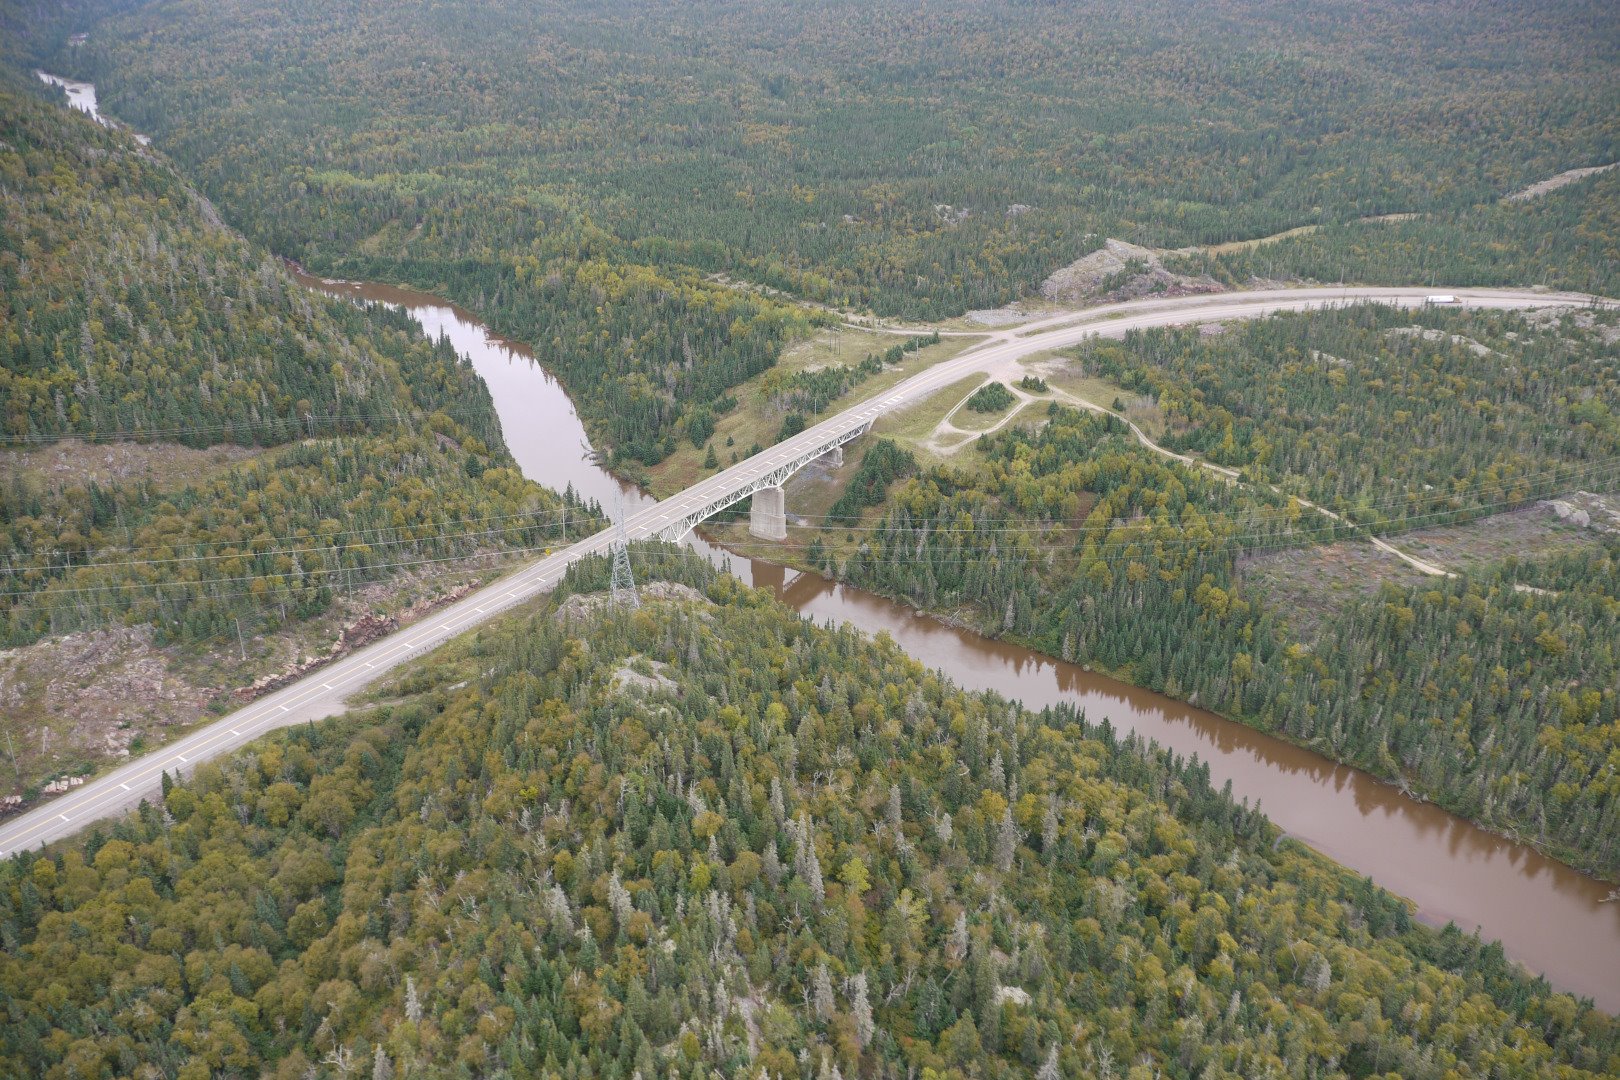 Aerial shot of the bridge